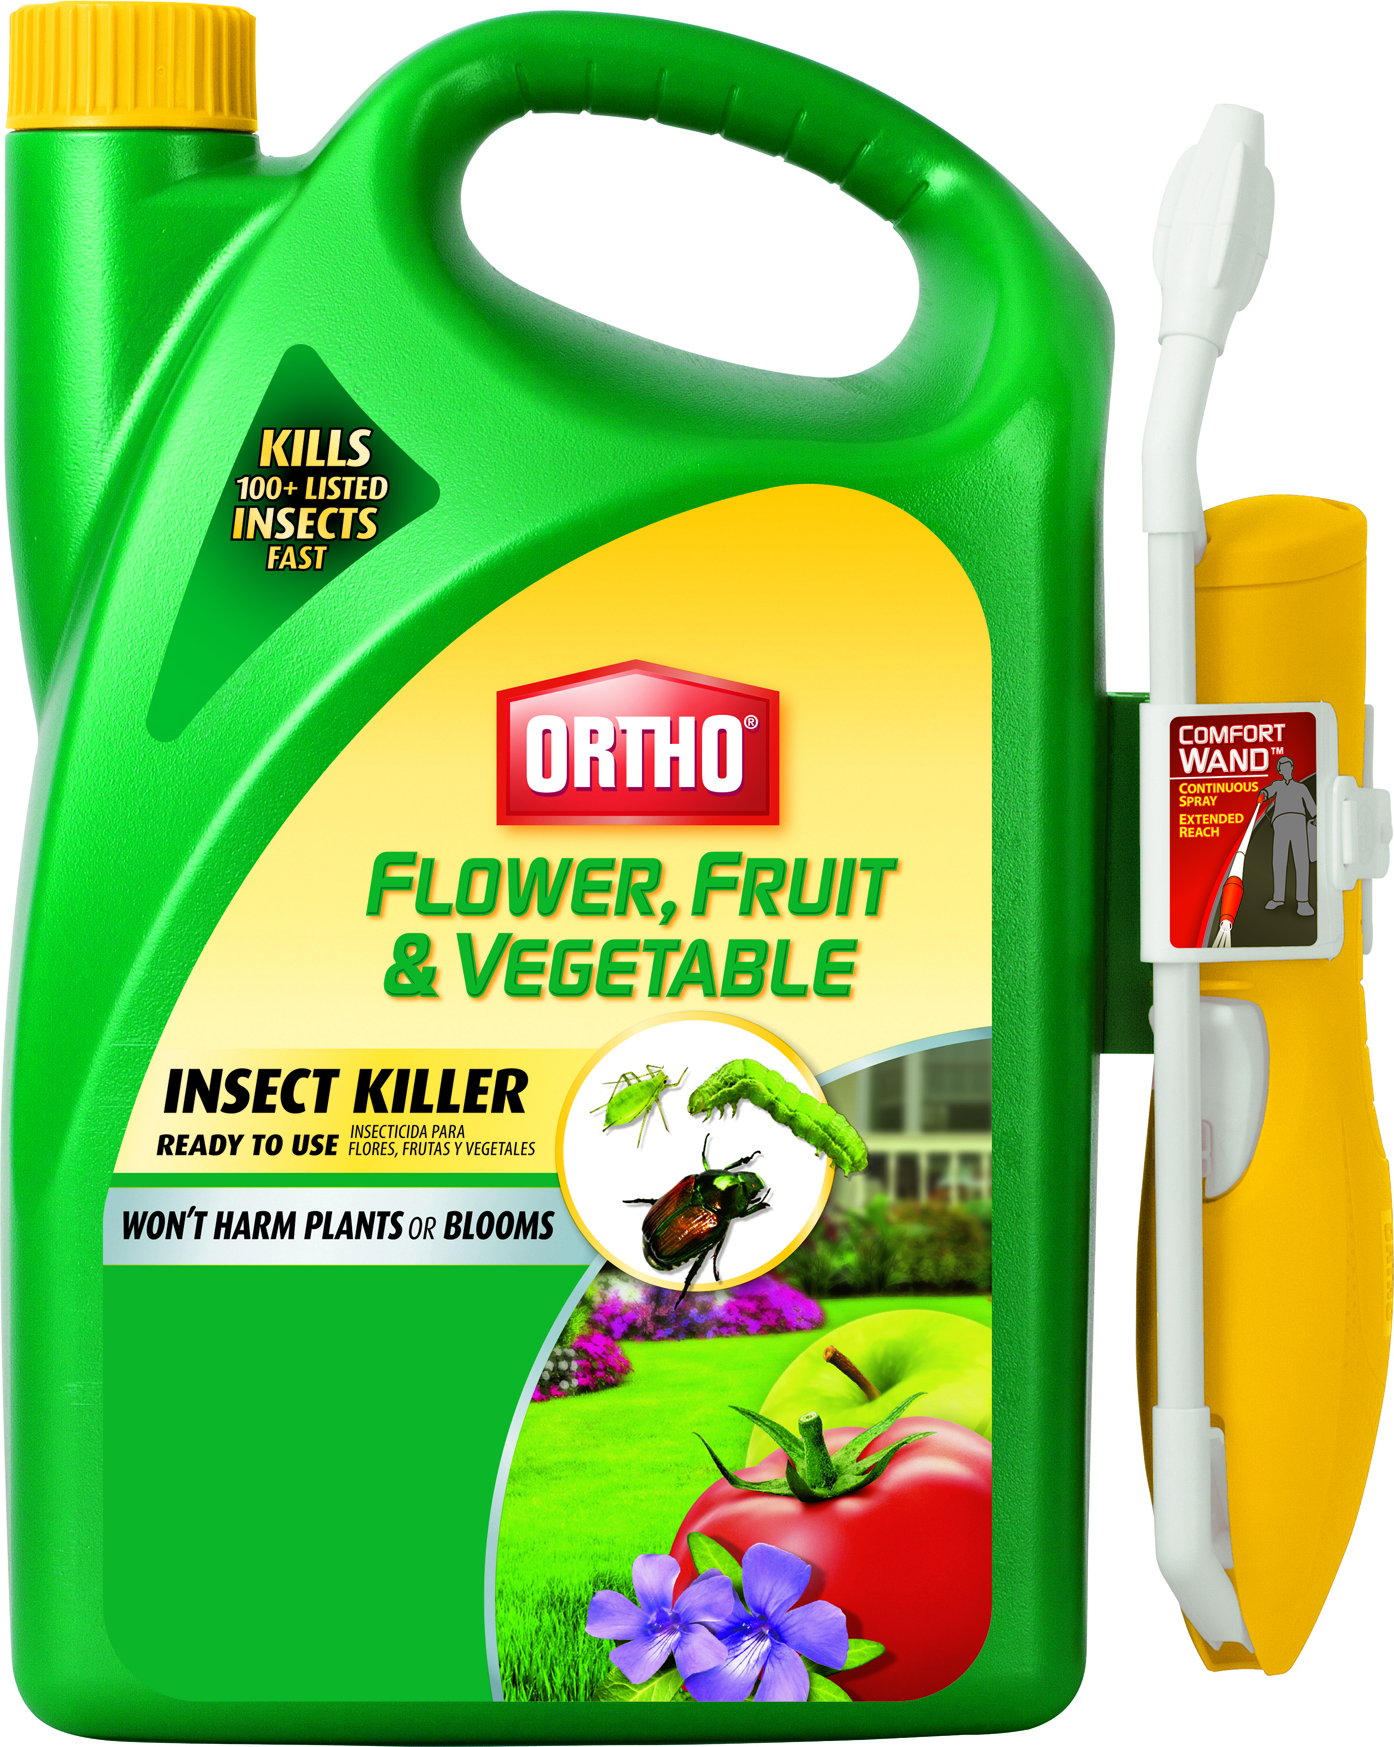 ORTHO FLOWER, FRUIT & VEGETABLE INSECT KILLER RTU